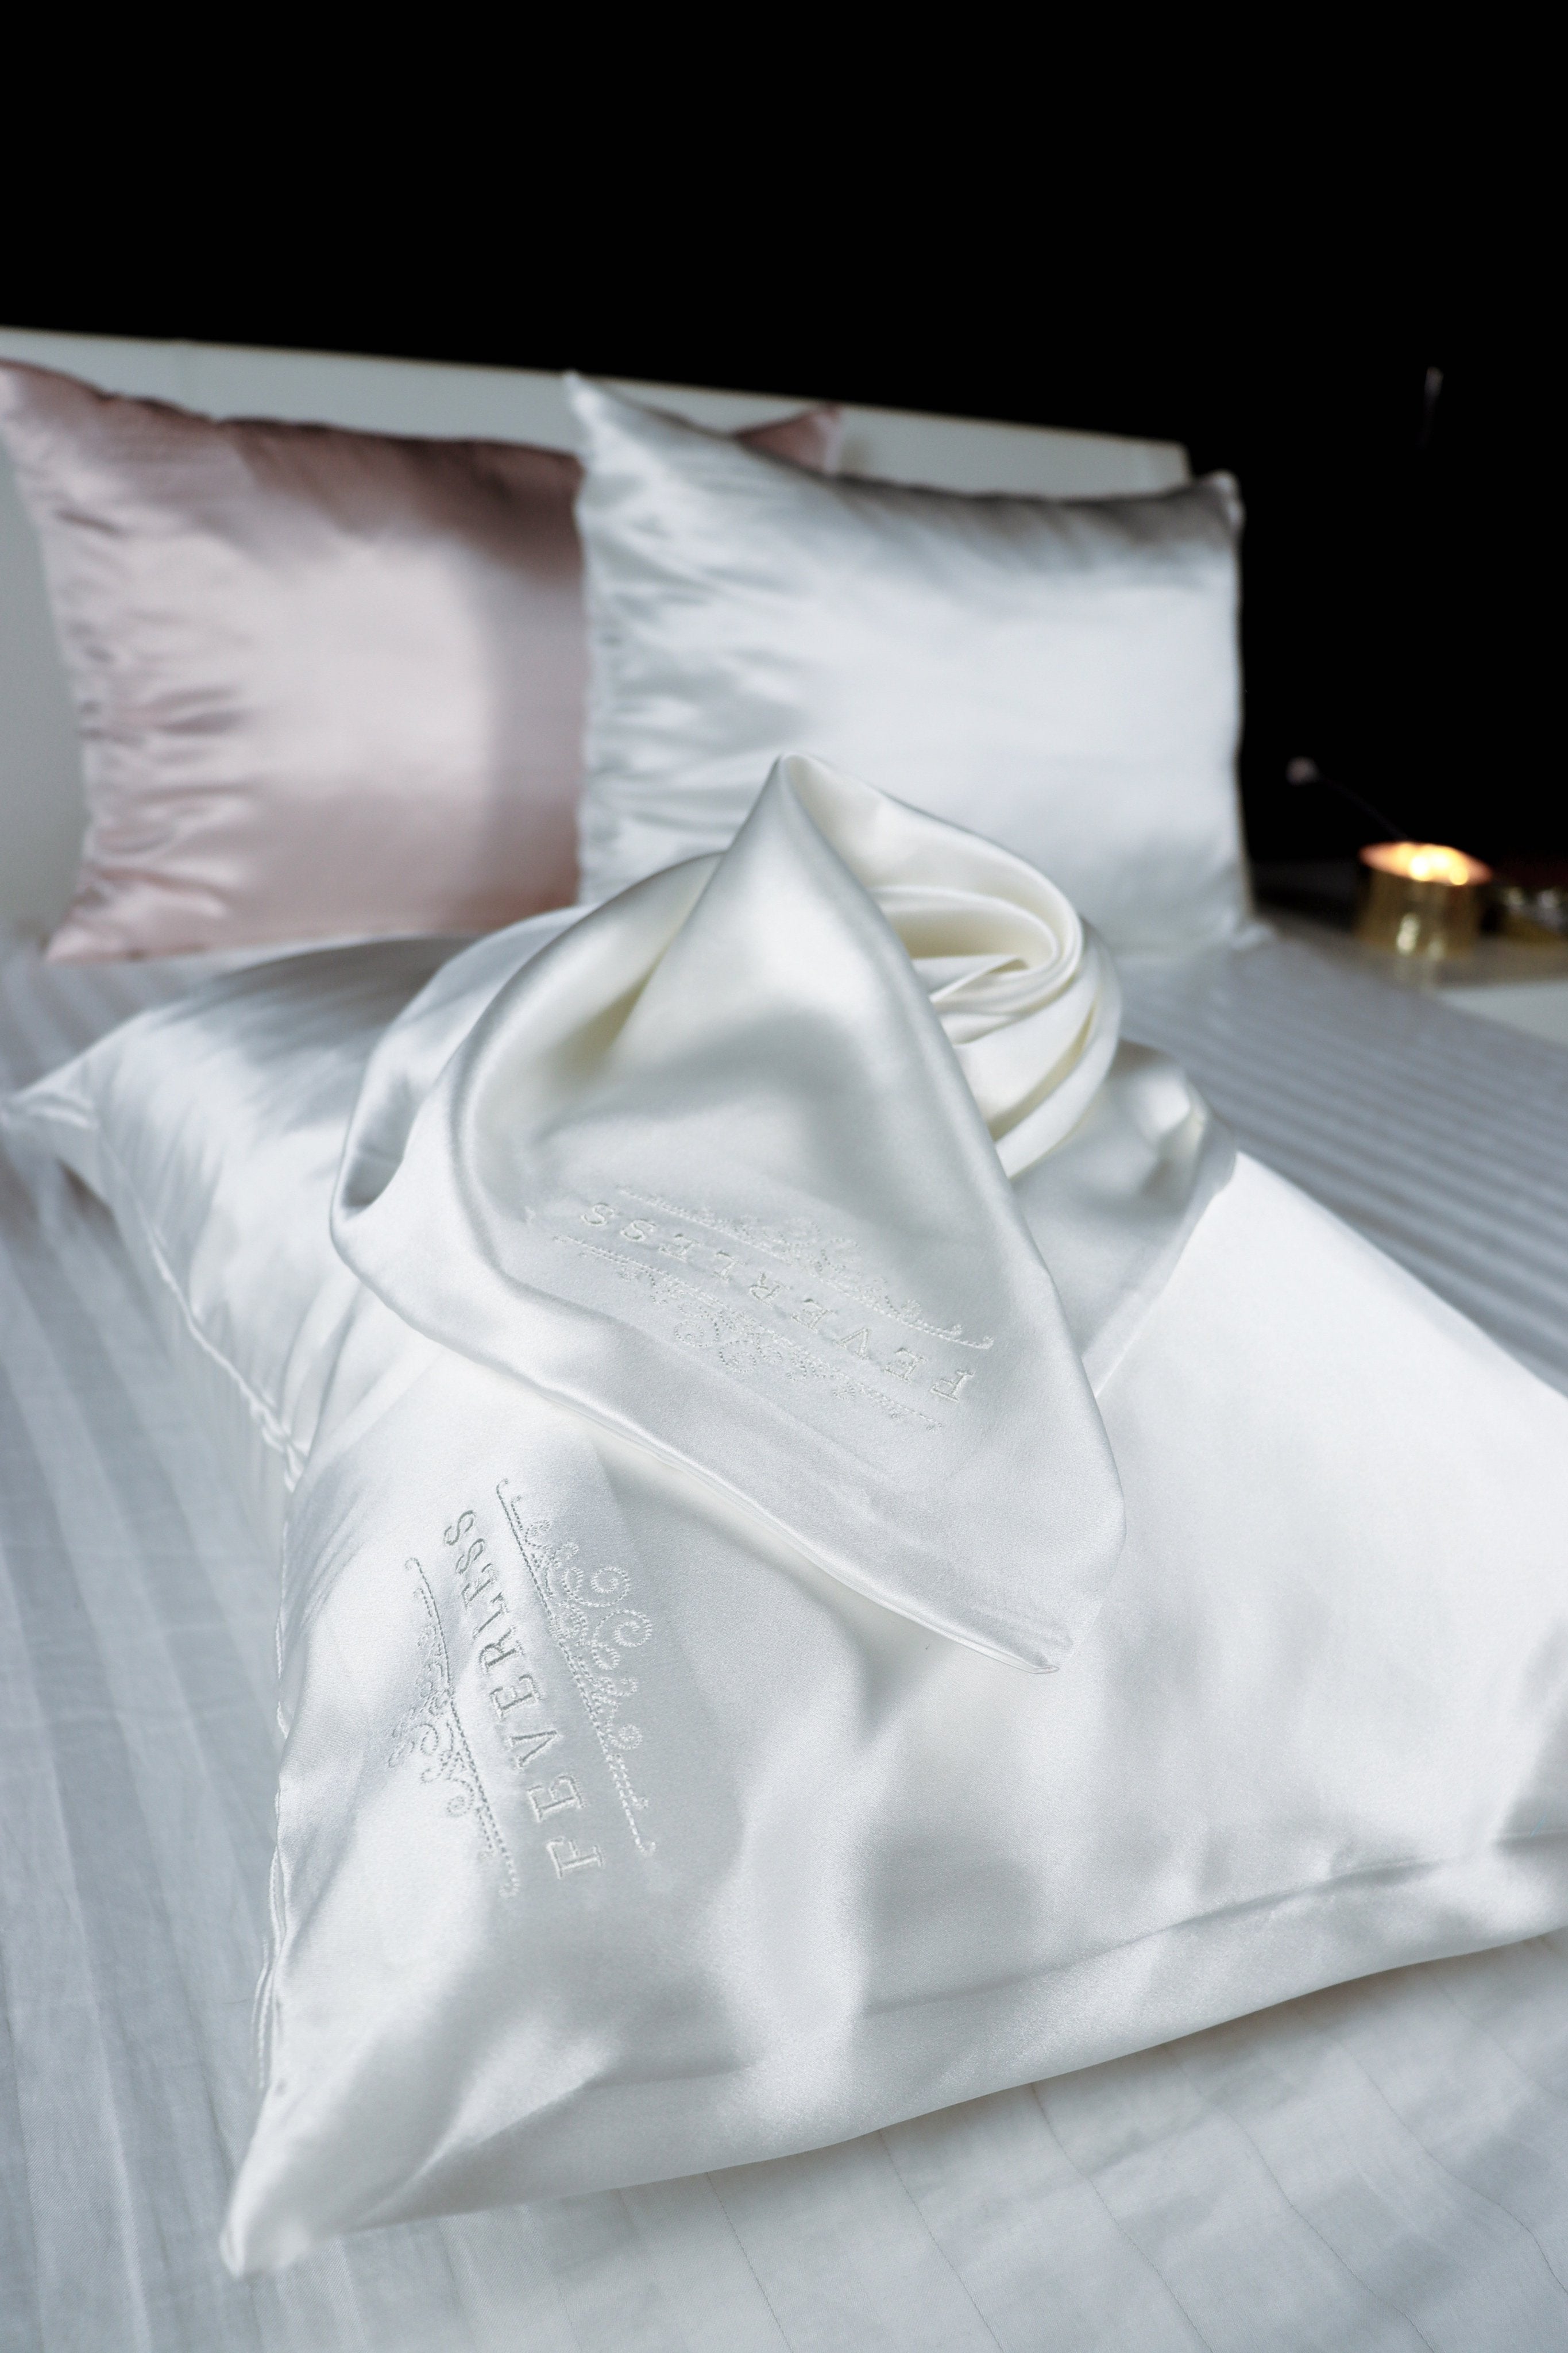 SET de 2 fundas de almohada bordadas con el logo FeverLess, de Seda Natural Mulberry con cierre Blanco